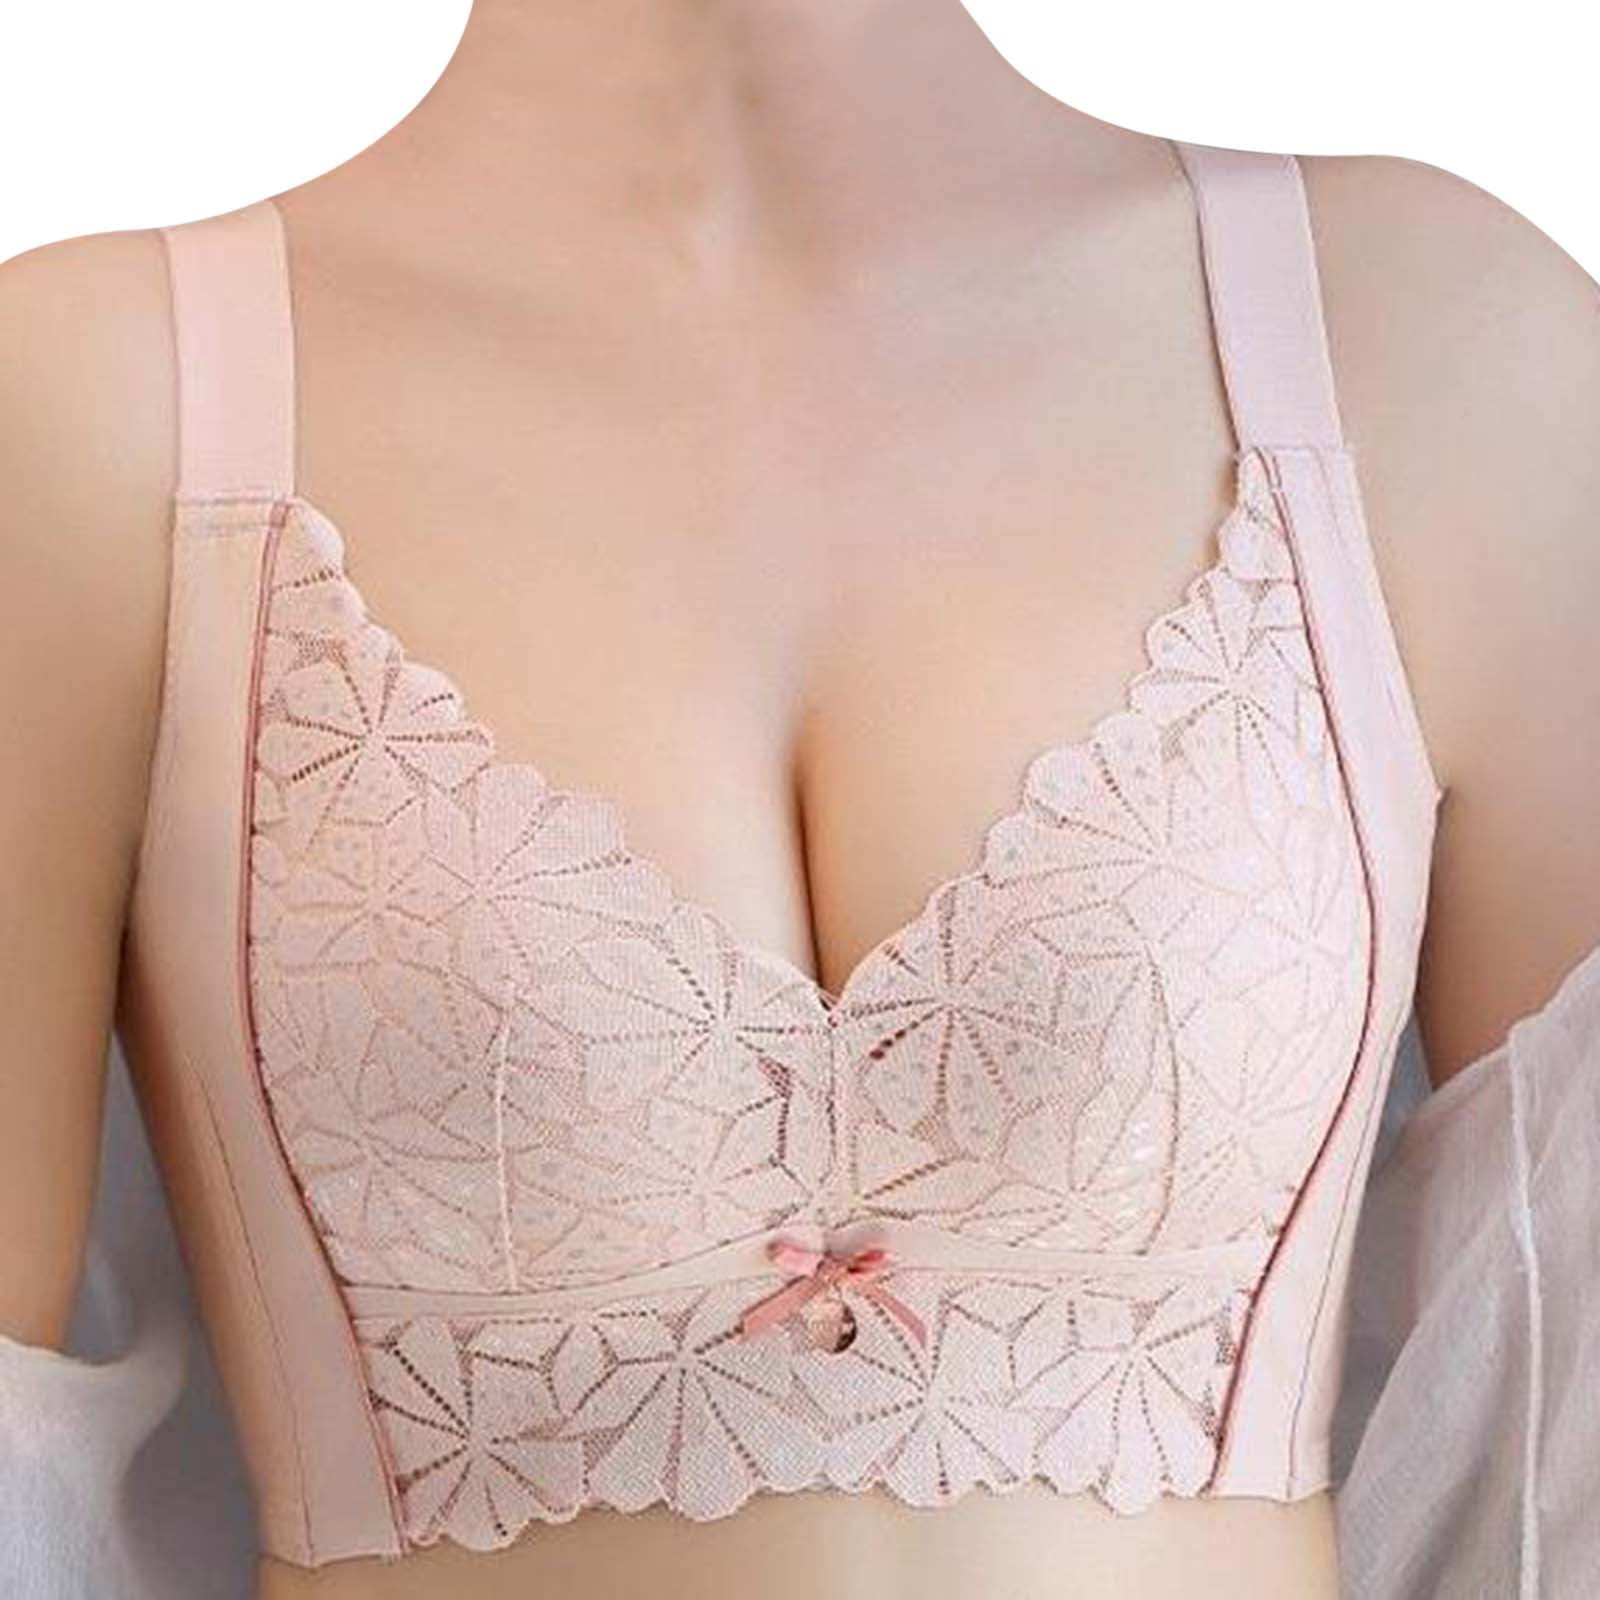 LEEy-World Lingerie for Women Low Cut Bra Women Underwear Bralette Crop Top Female  Bra Push Up Brassiere Bra Pink,XL 